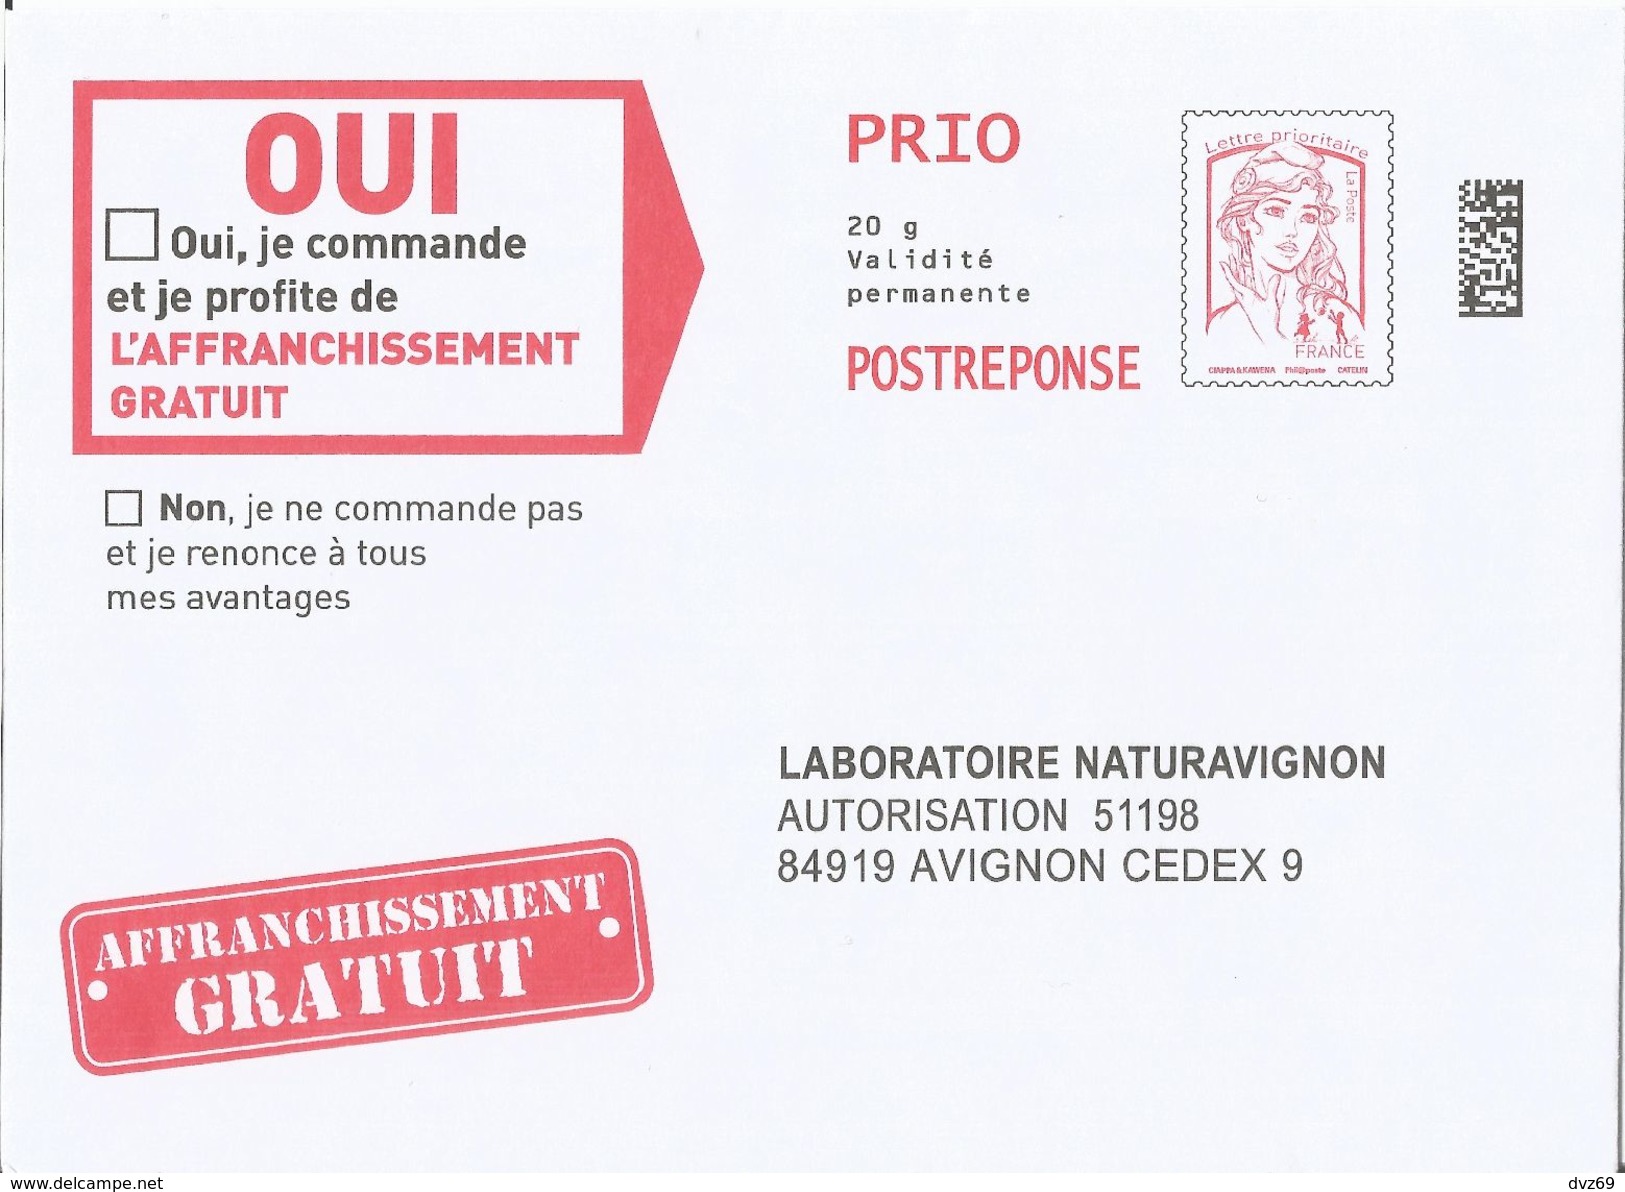 Laboratoire Naturavignon, Enveloppe Neuve, PostReponse 20g PRIO, Validité Permanente - Prêts-à-poster: Réponse /Ciappa-Kavena